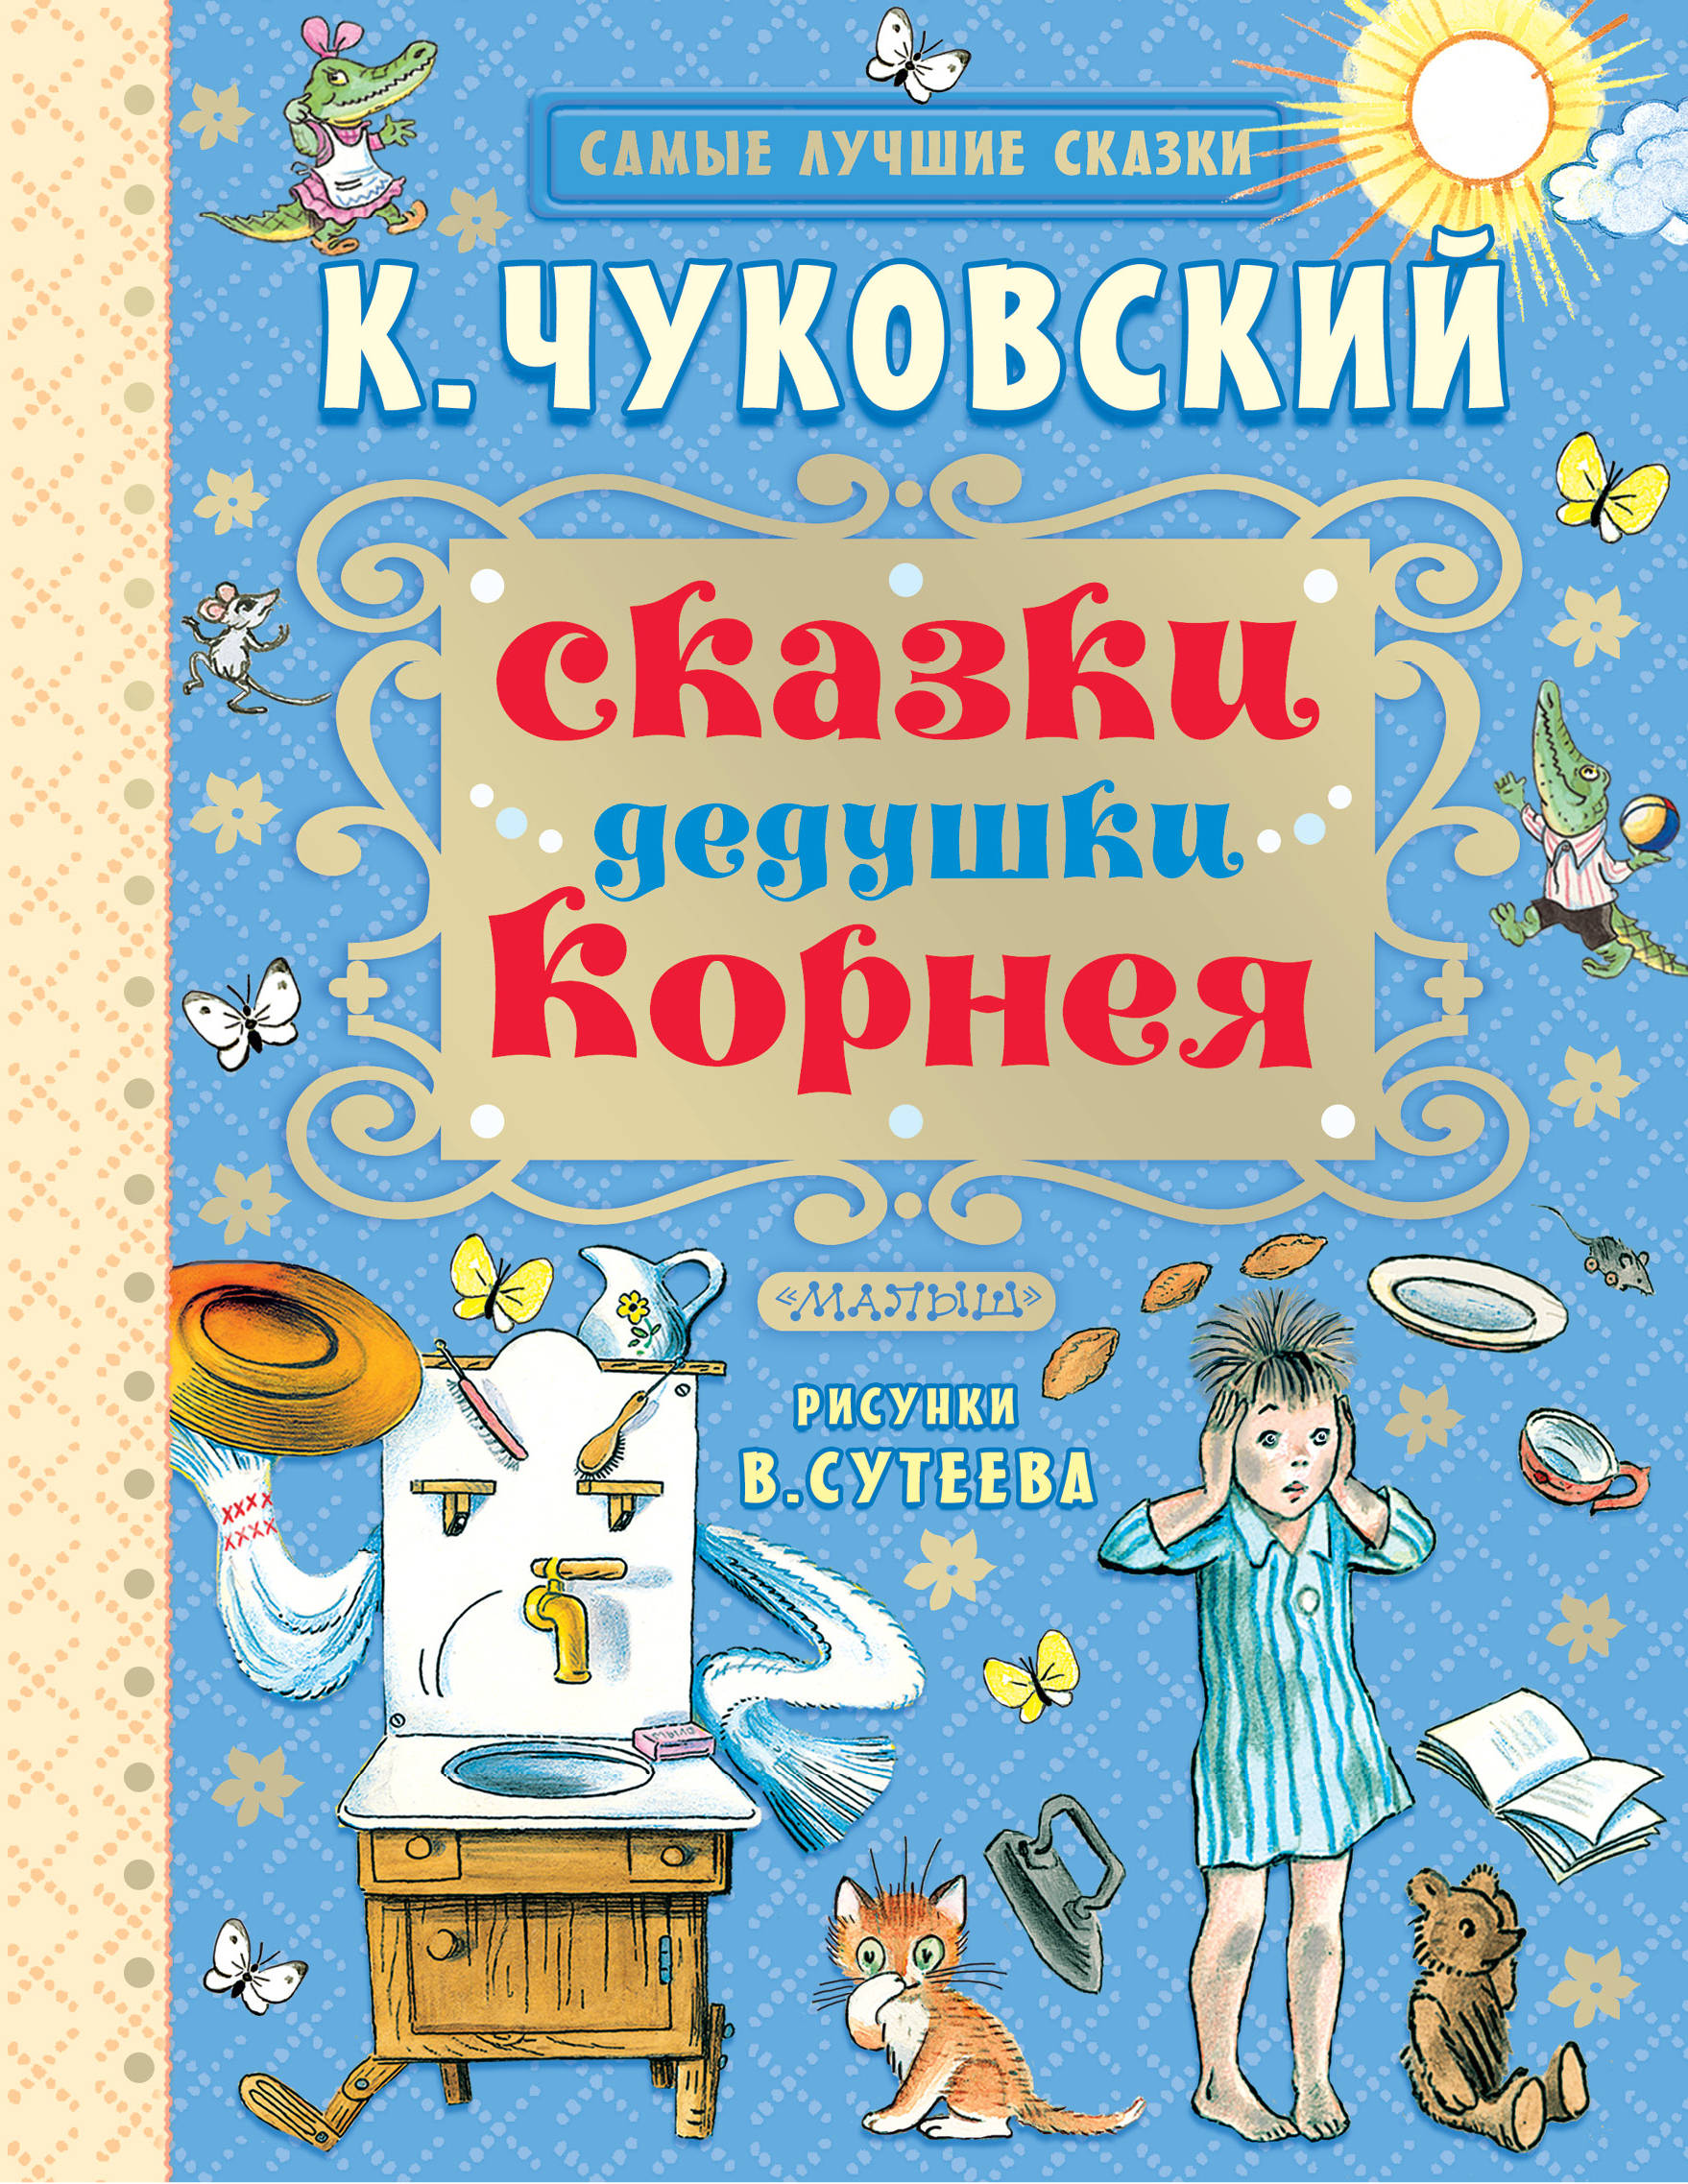 Книги Чуковского